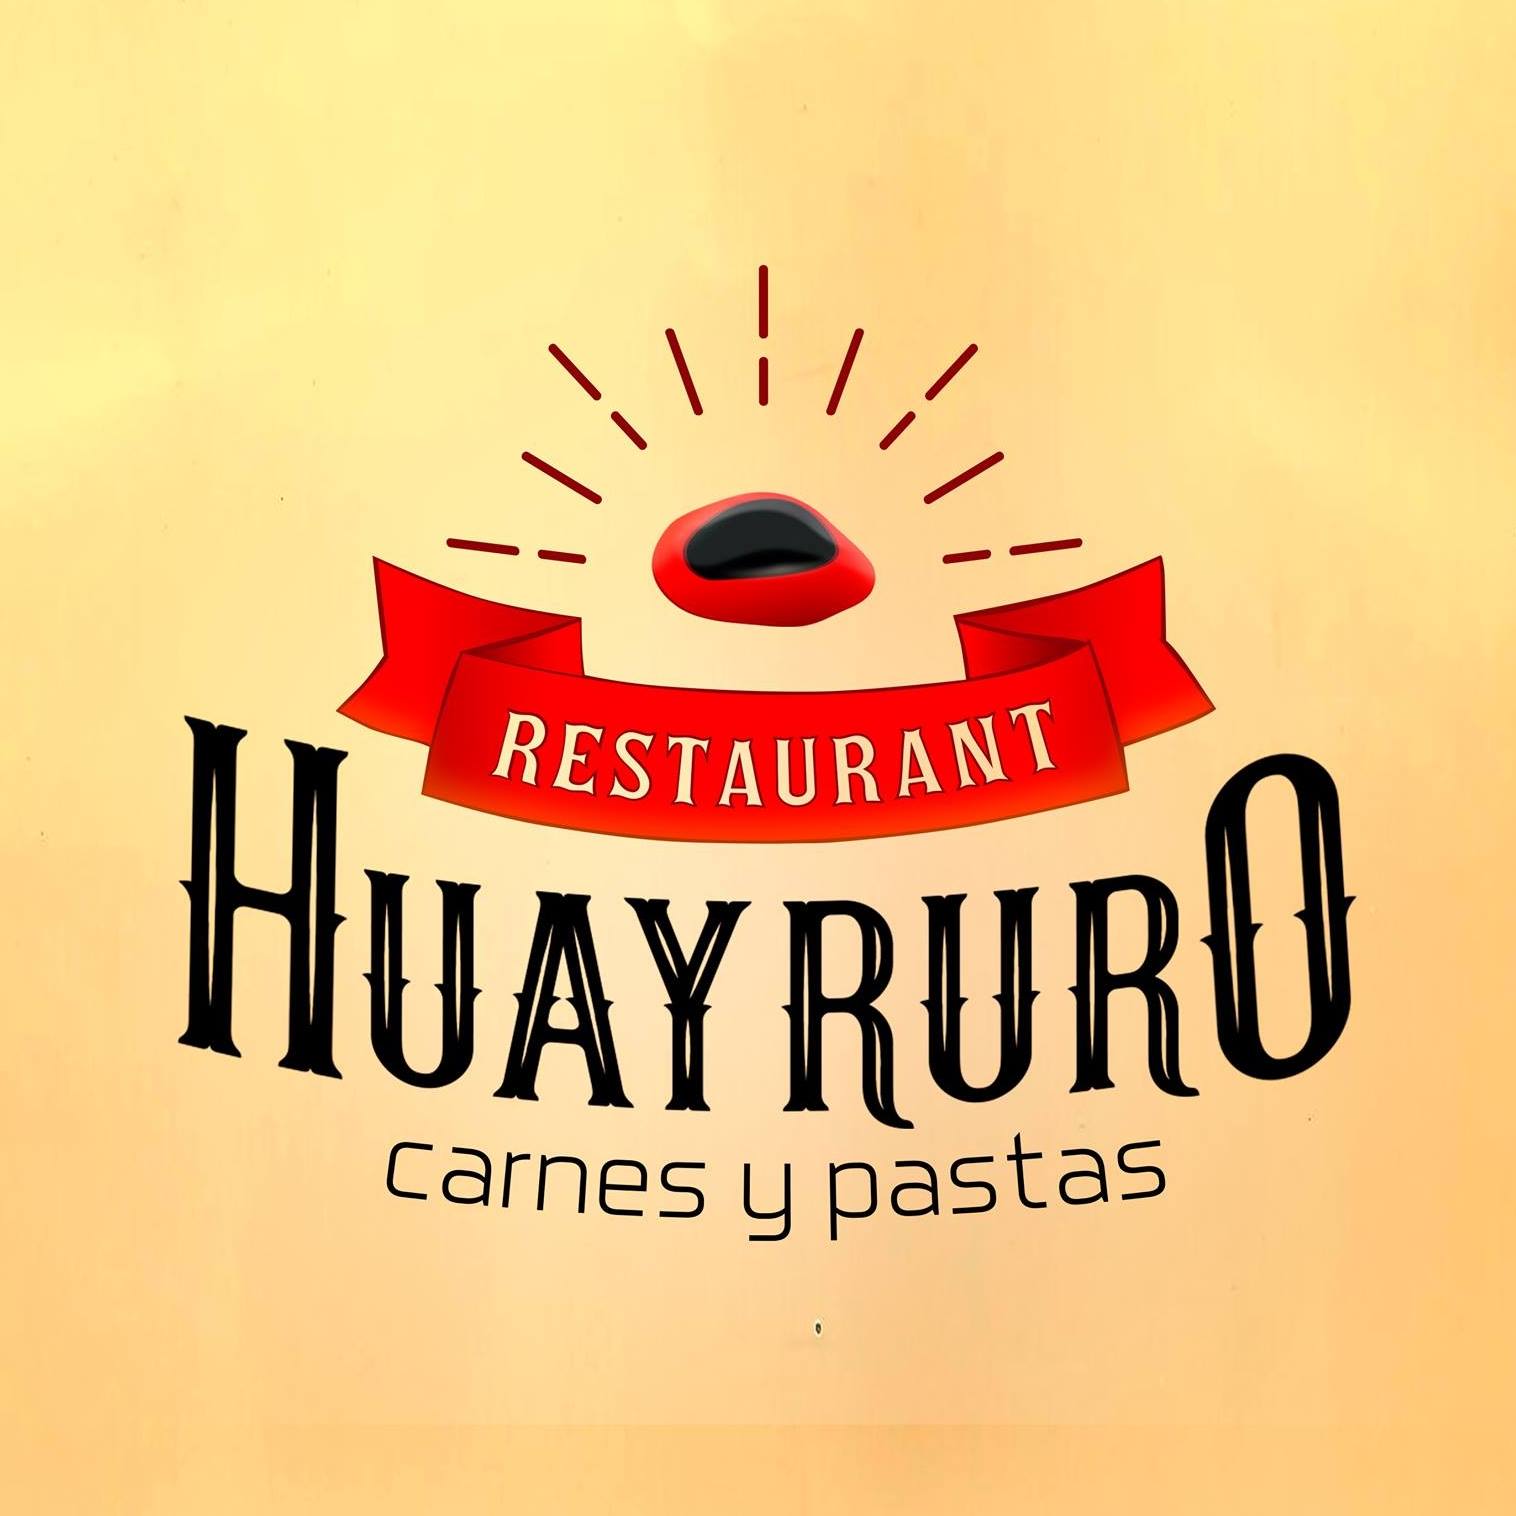 huayruro